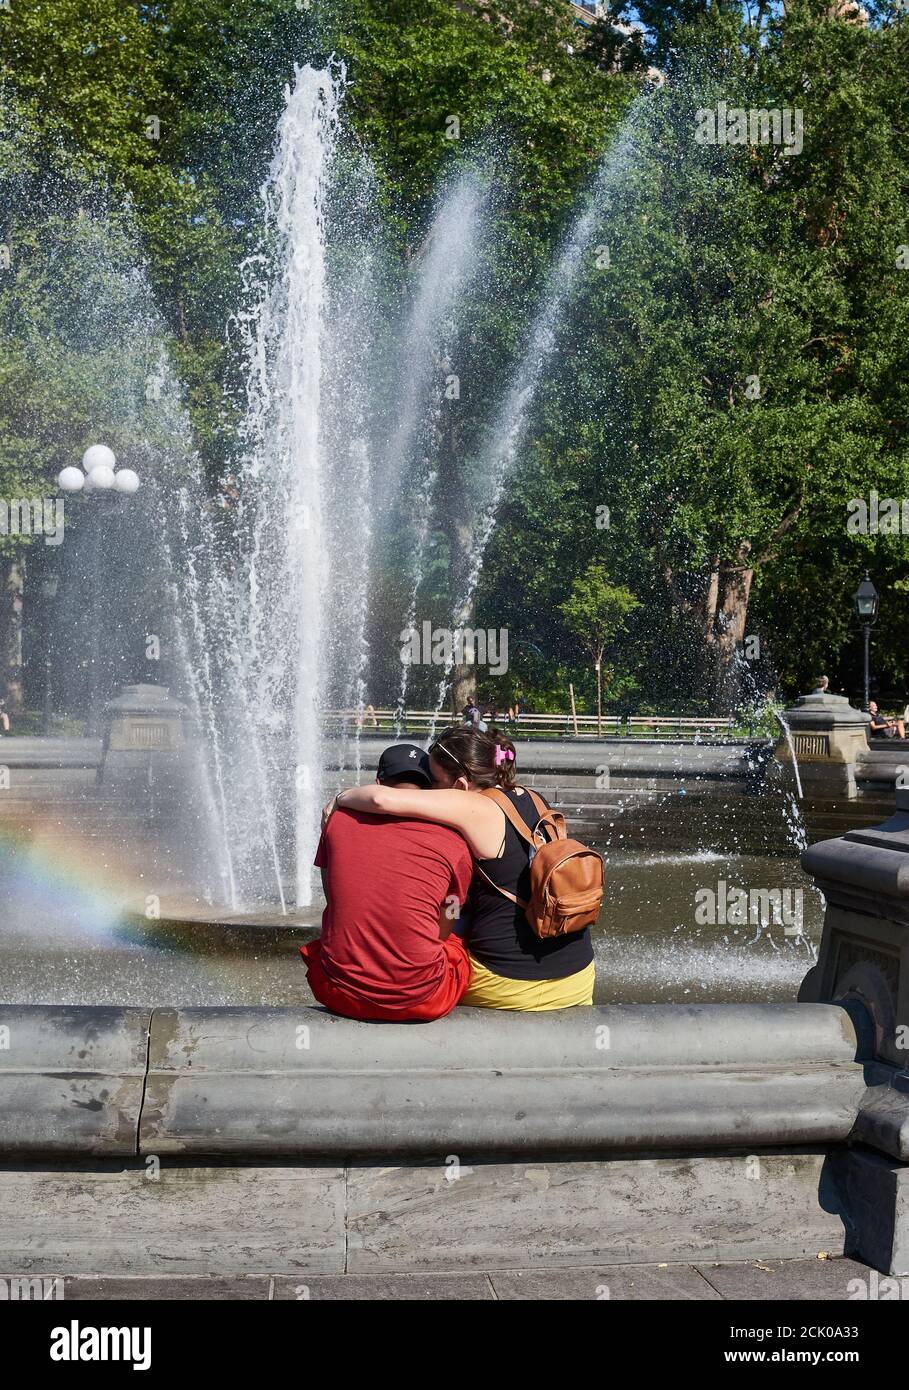 NEW YORK, NY - 8 SETTEMBRE 2020: Un abbraccio di coppia, come si siedono di fronte alla fontana in Washington Square Park. Foto Stock